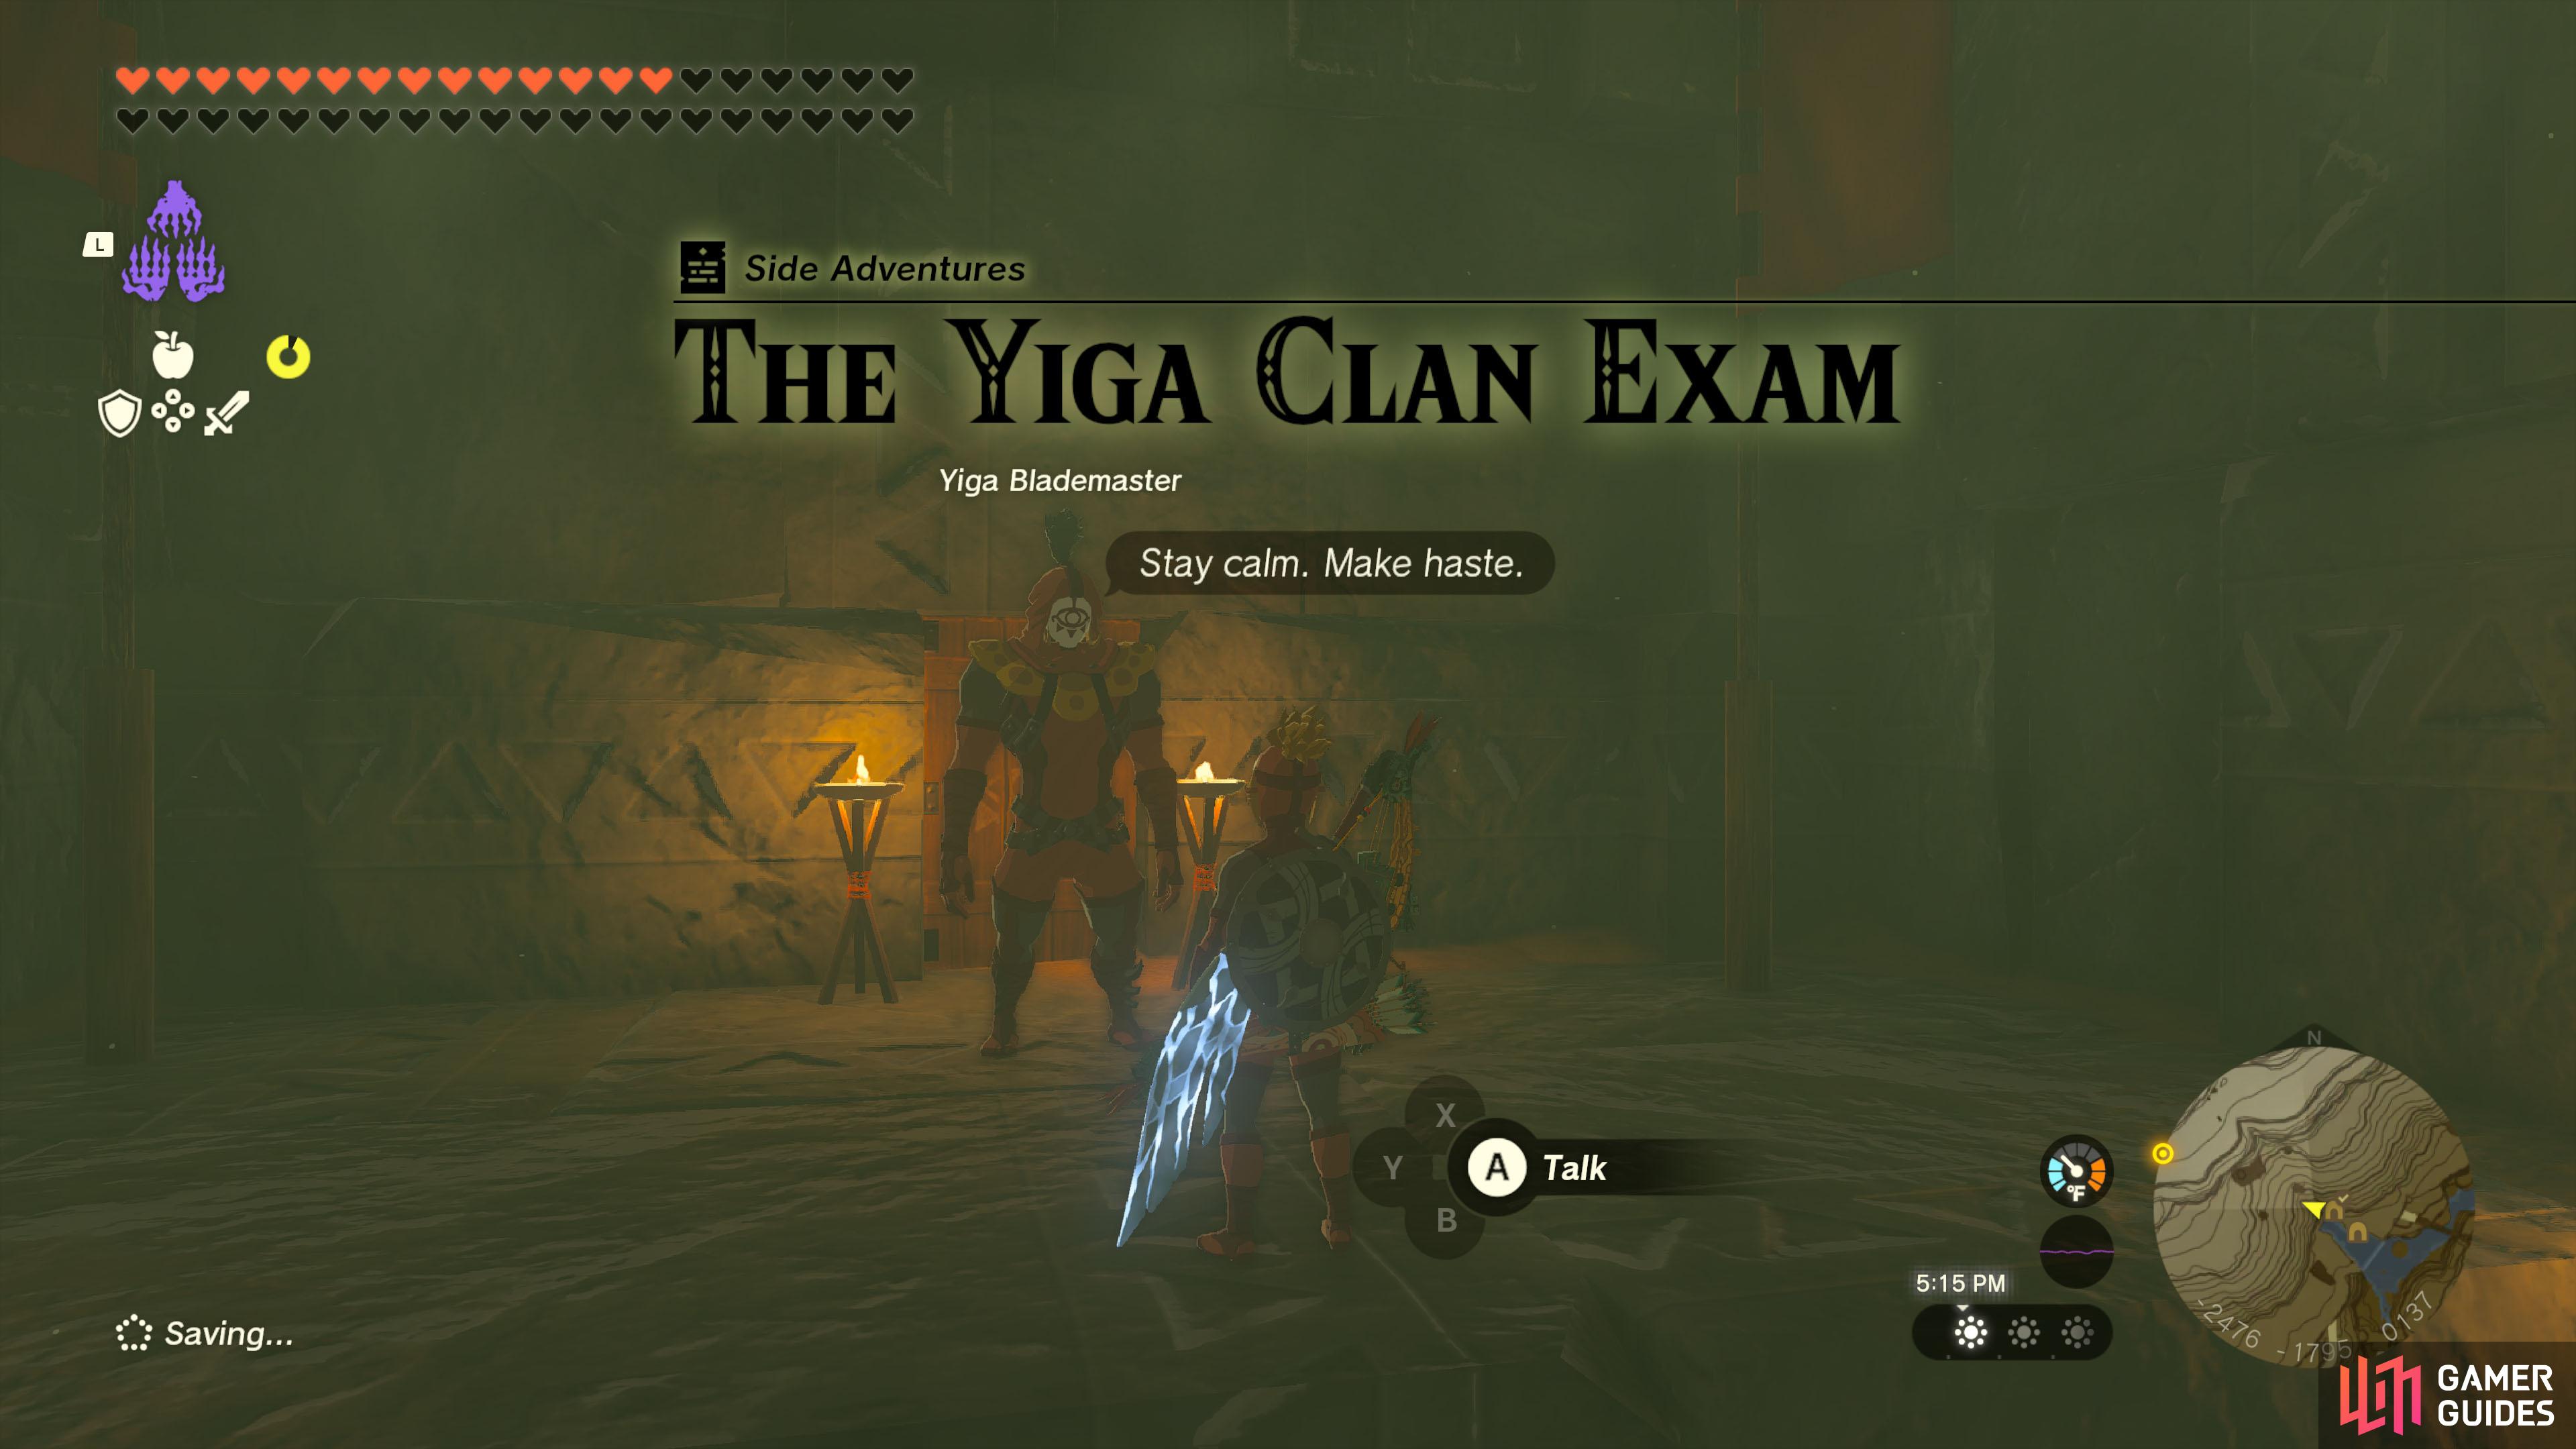 Even Yiga Clan members need to take exams…